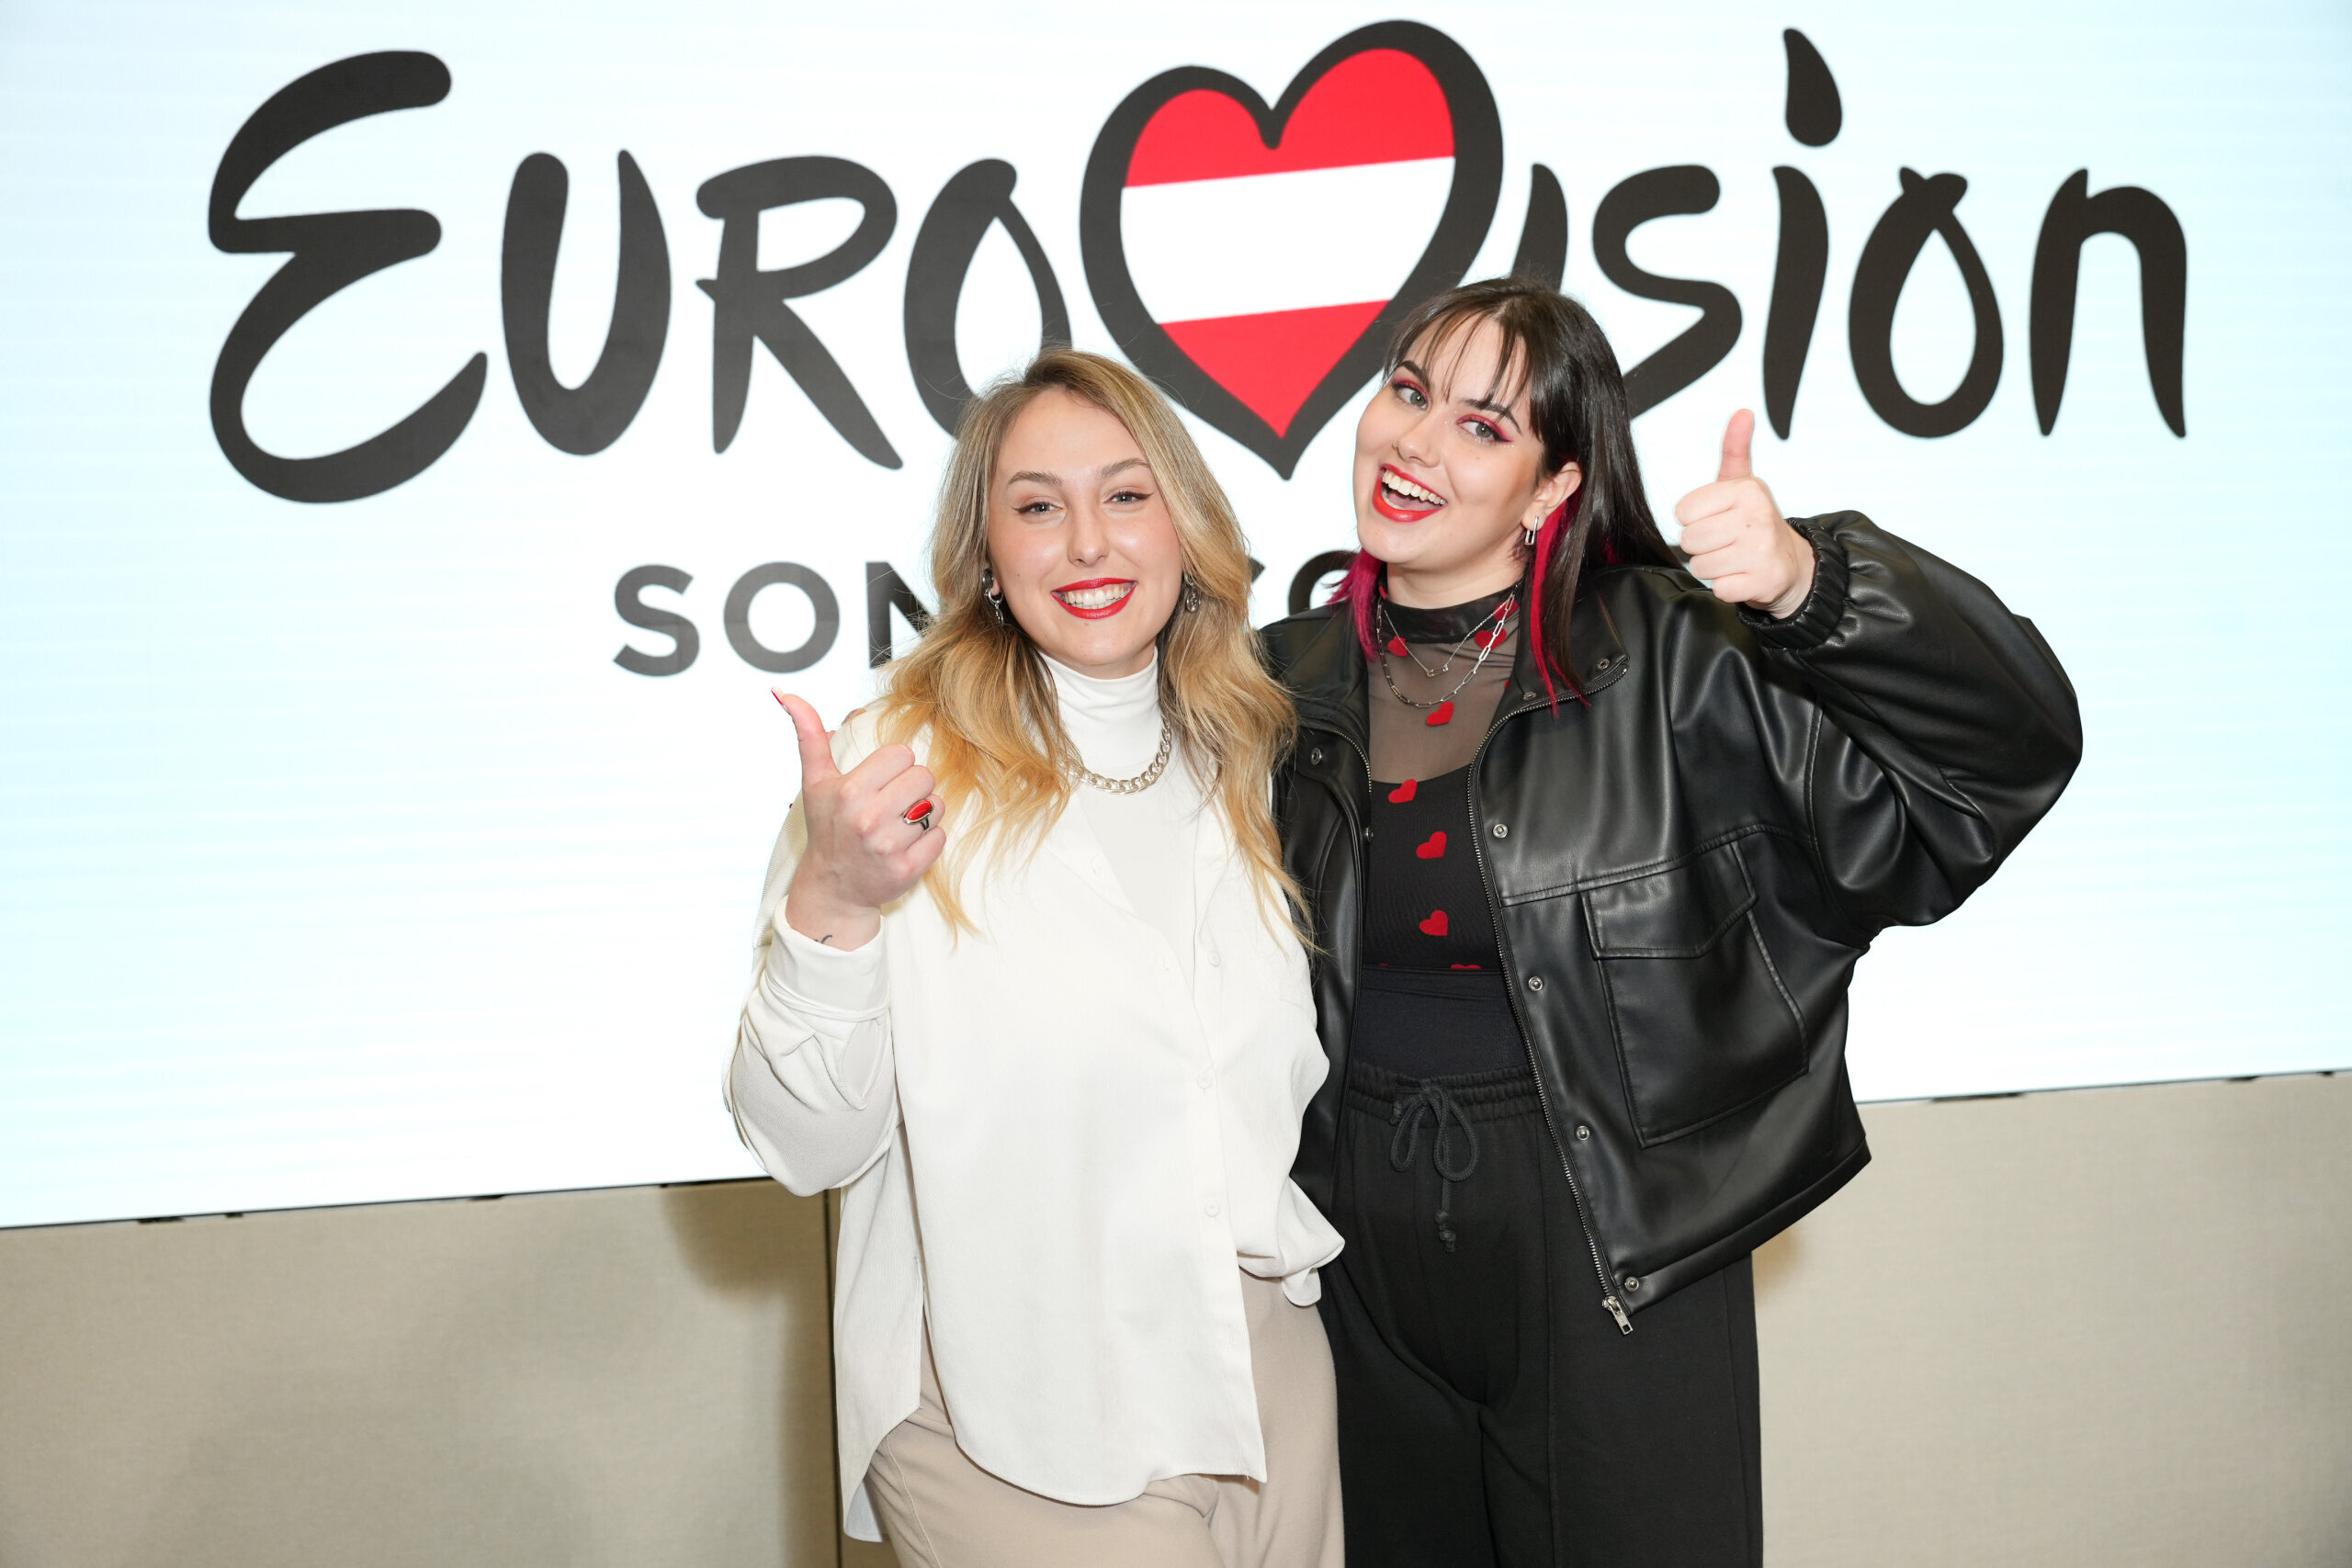 Escucha “Who the hell is Edgar?”, la canción con la que Teya & Salena representarán a Austria en Eurovisión 2023